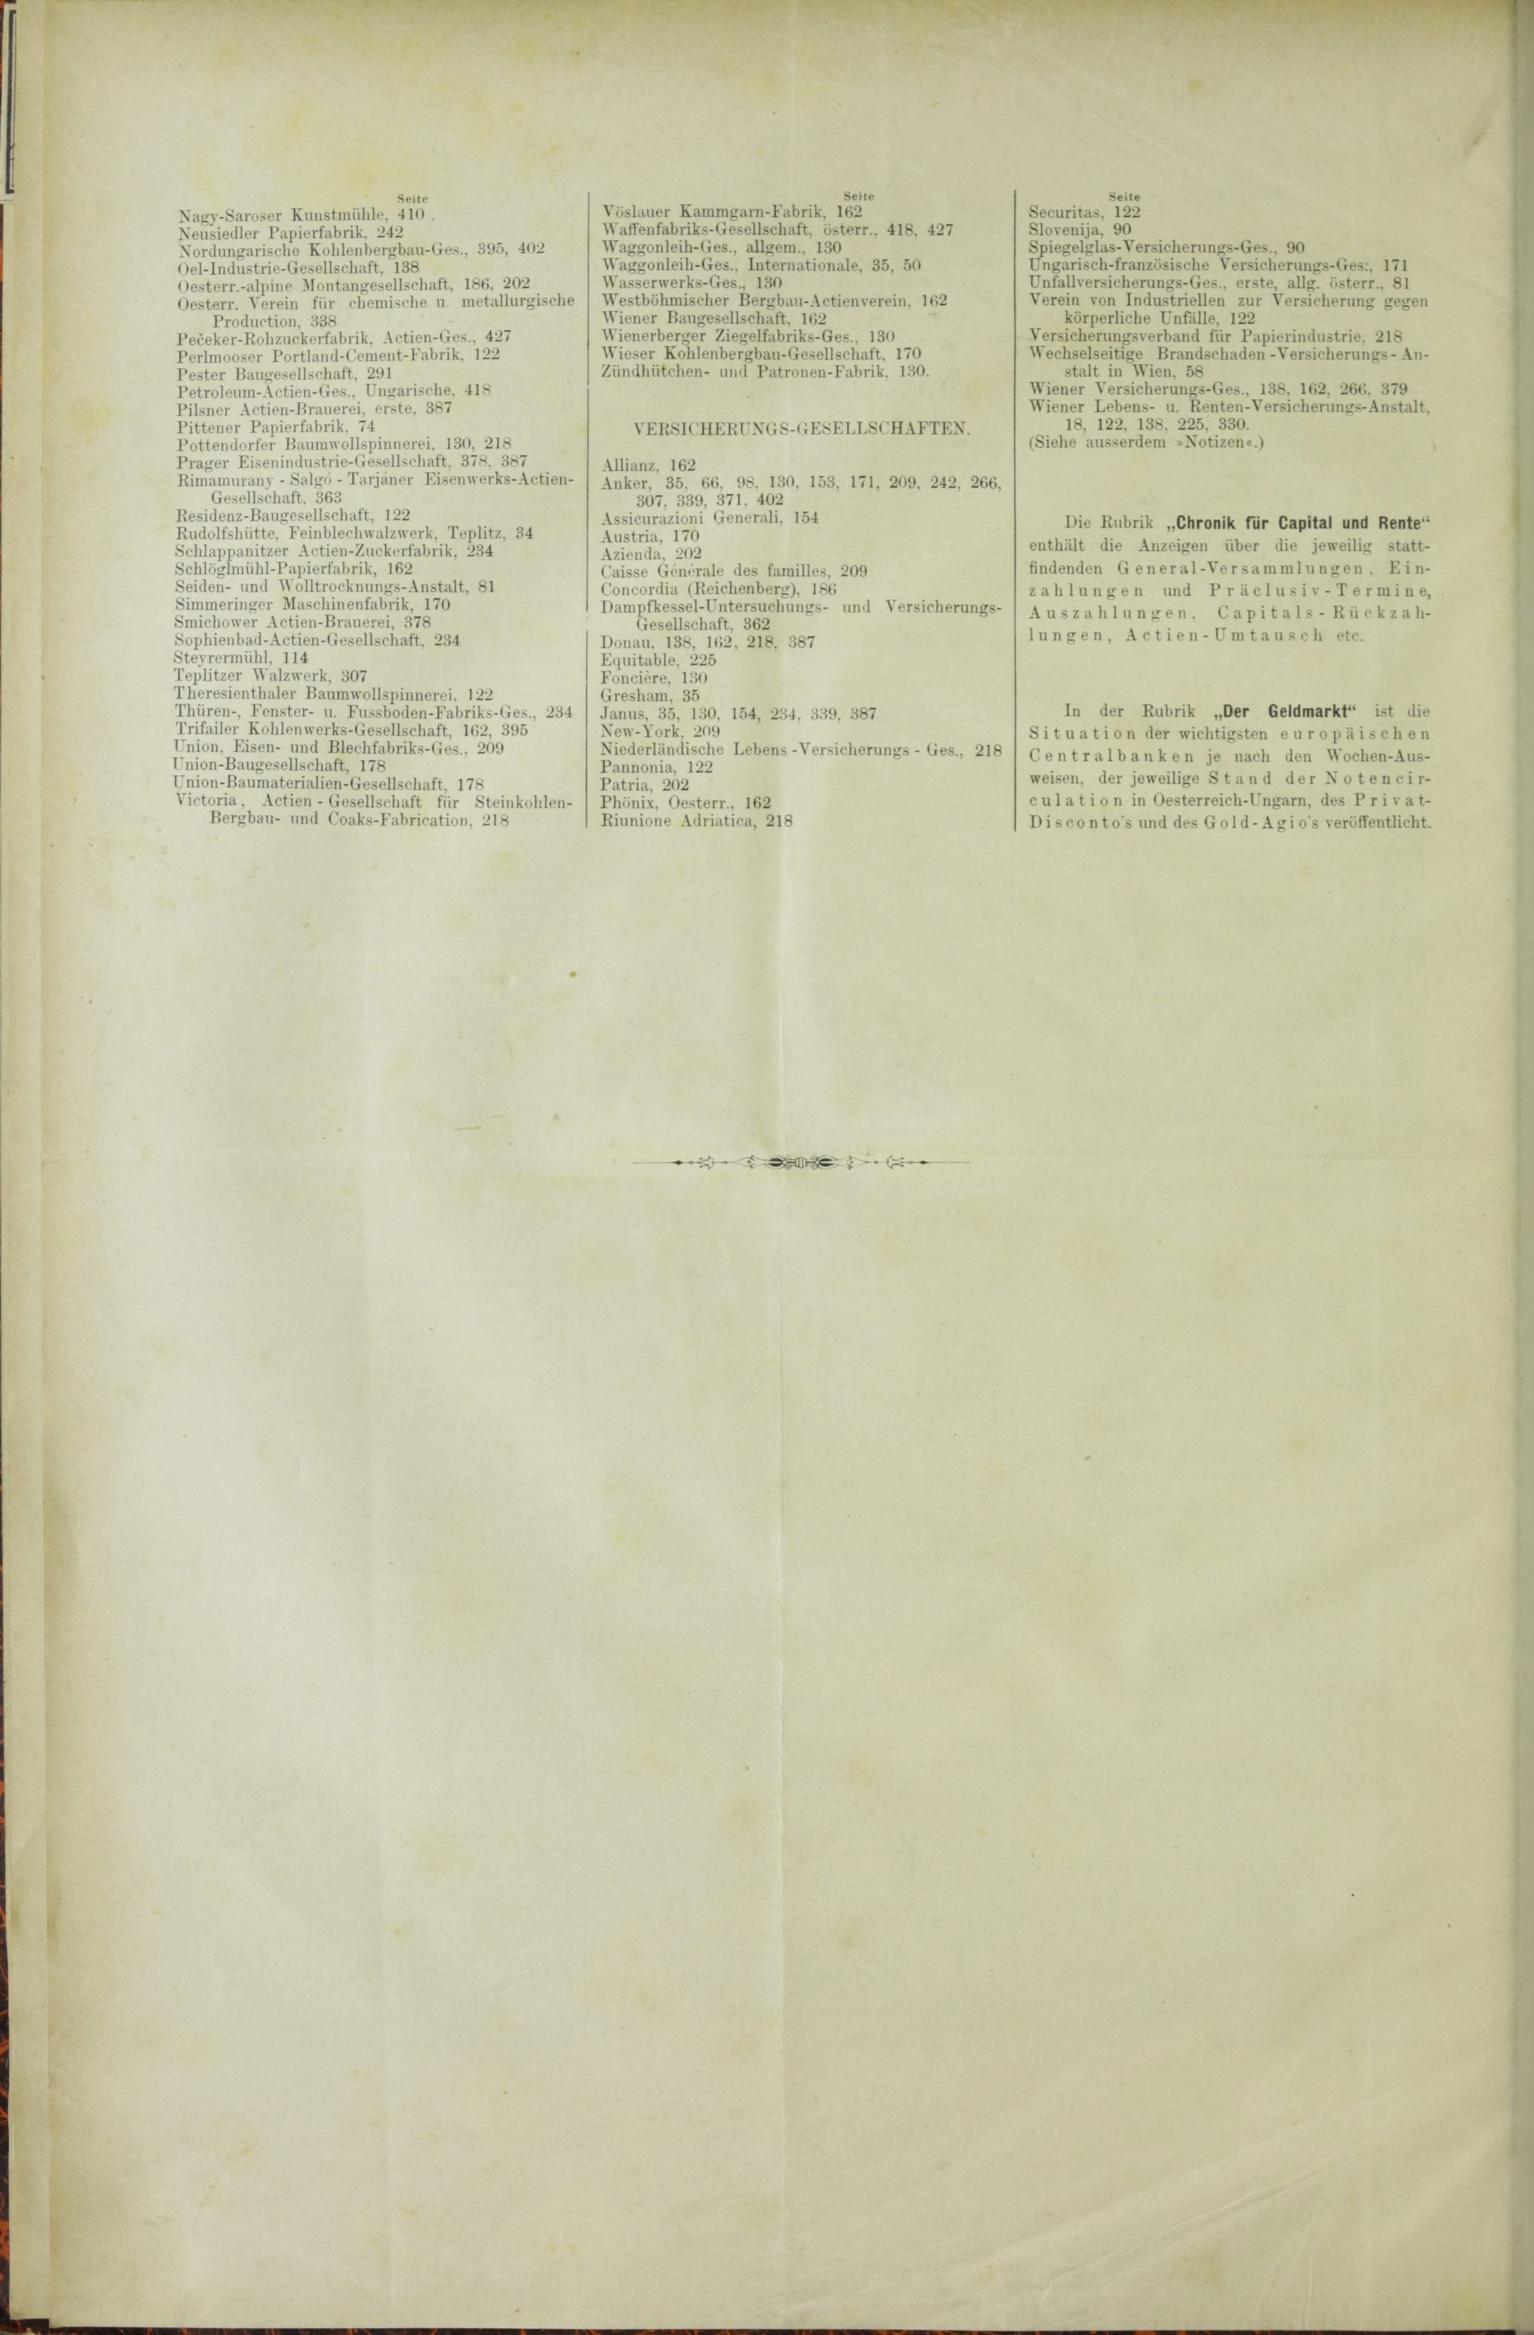 Der Tresor 13.08.1885 - Seite 12